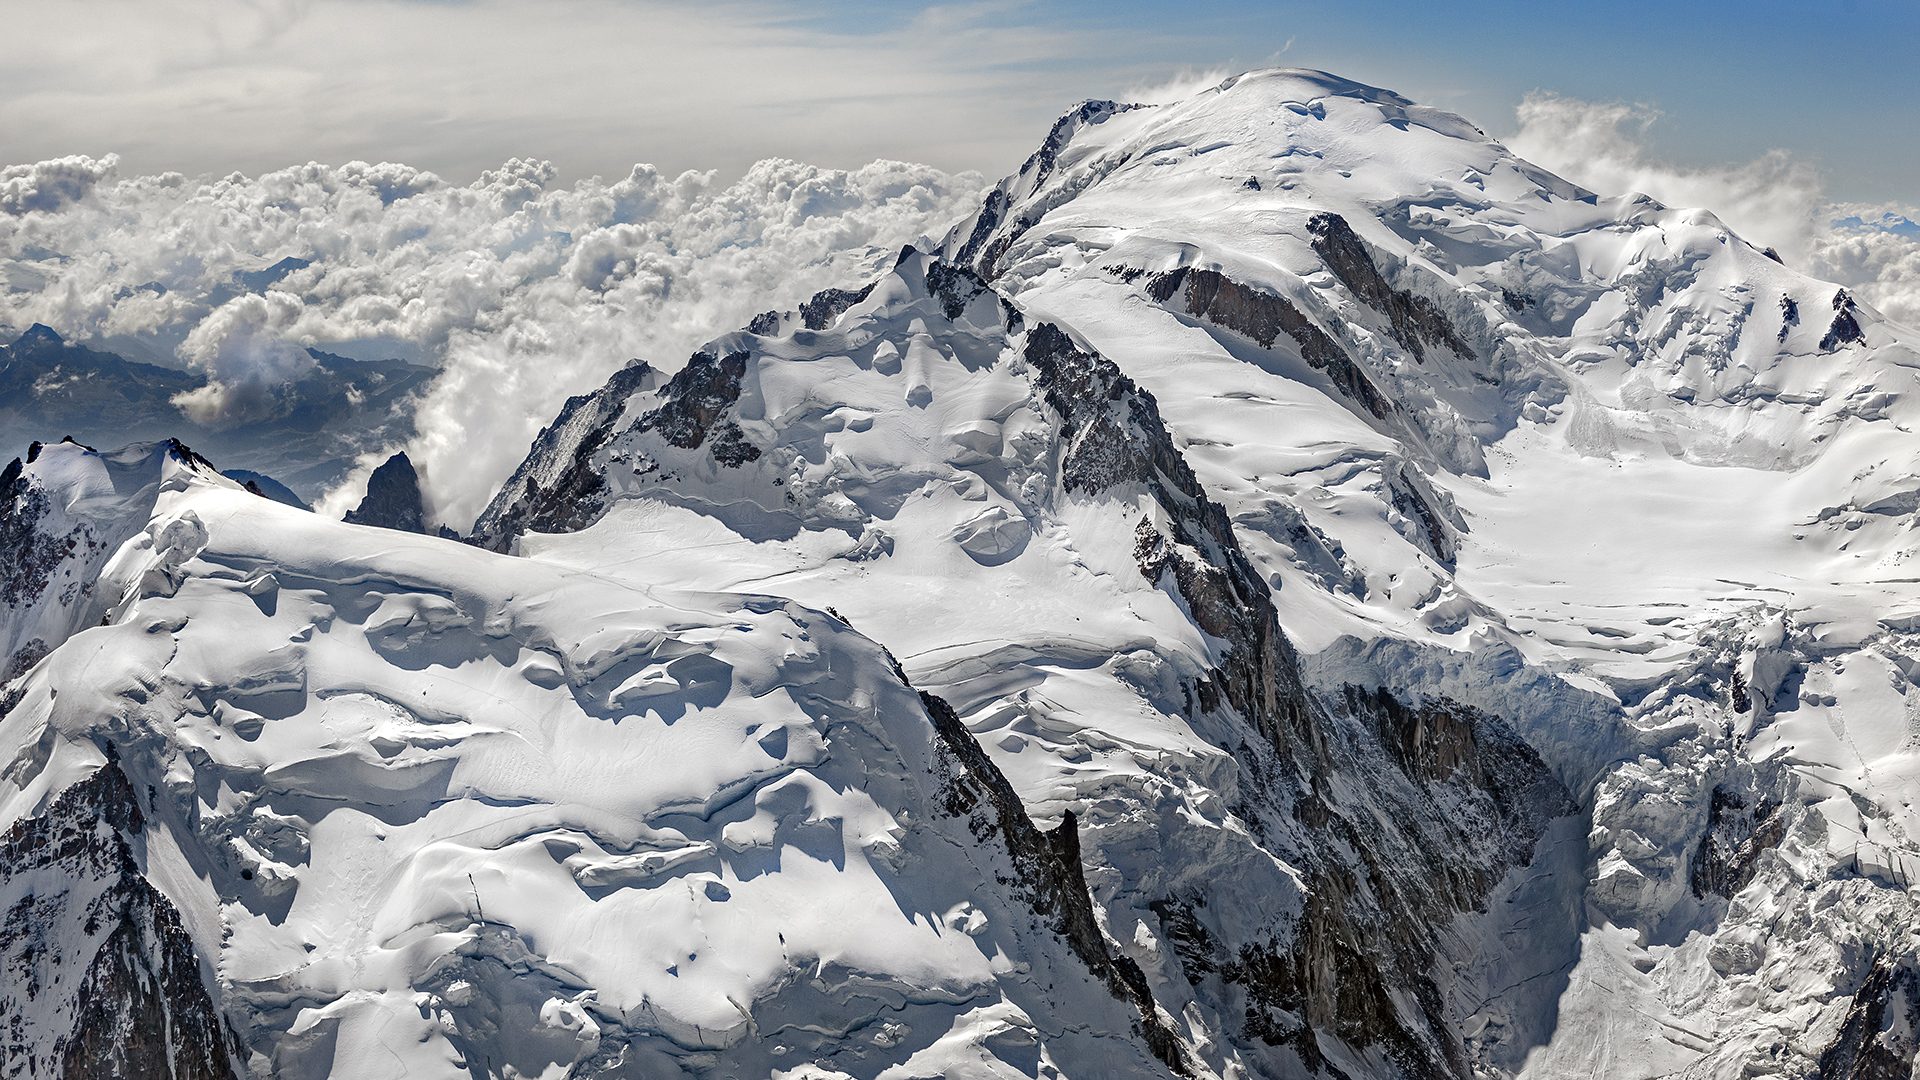 Der weiße Berg, mit 4.810m NN der höchste Berg in den Alpen, aber nicht der höchste Europas.